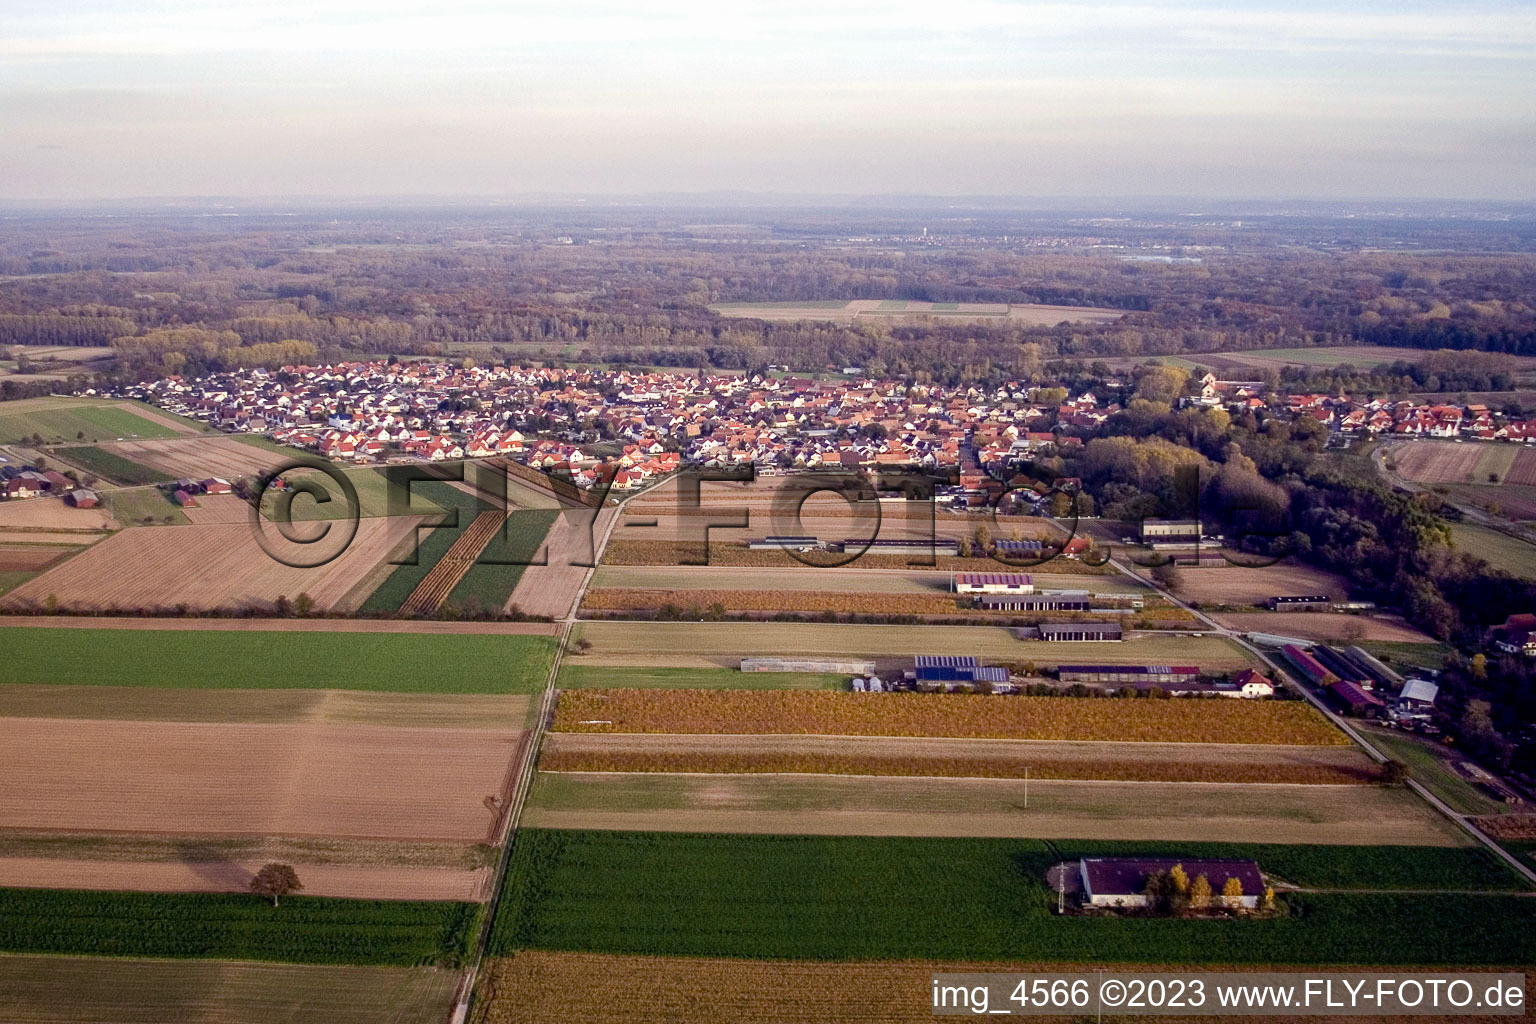 Vue aérienne de De l'ouest à Hördt dans le département Rhénanie-Palatinat, Allemagne